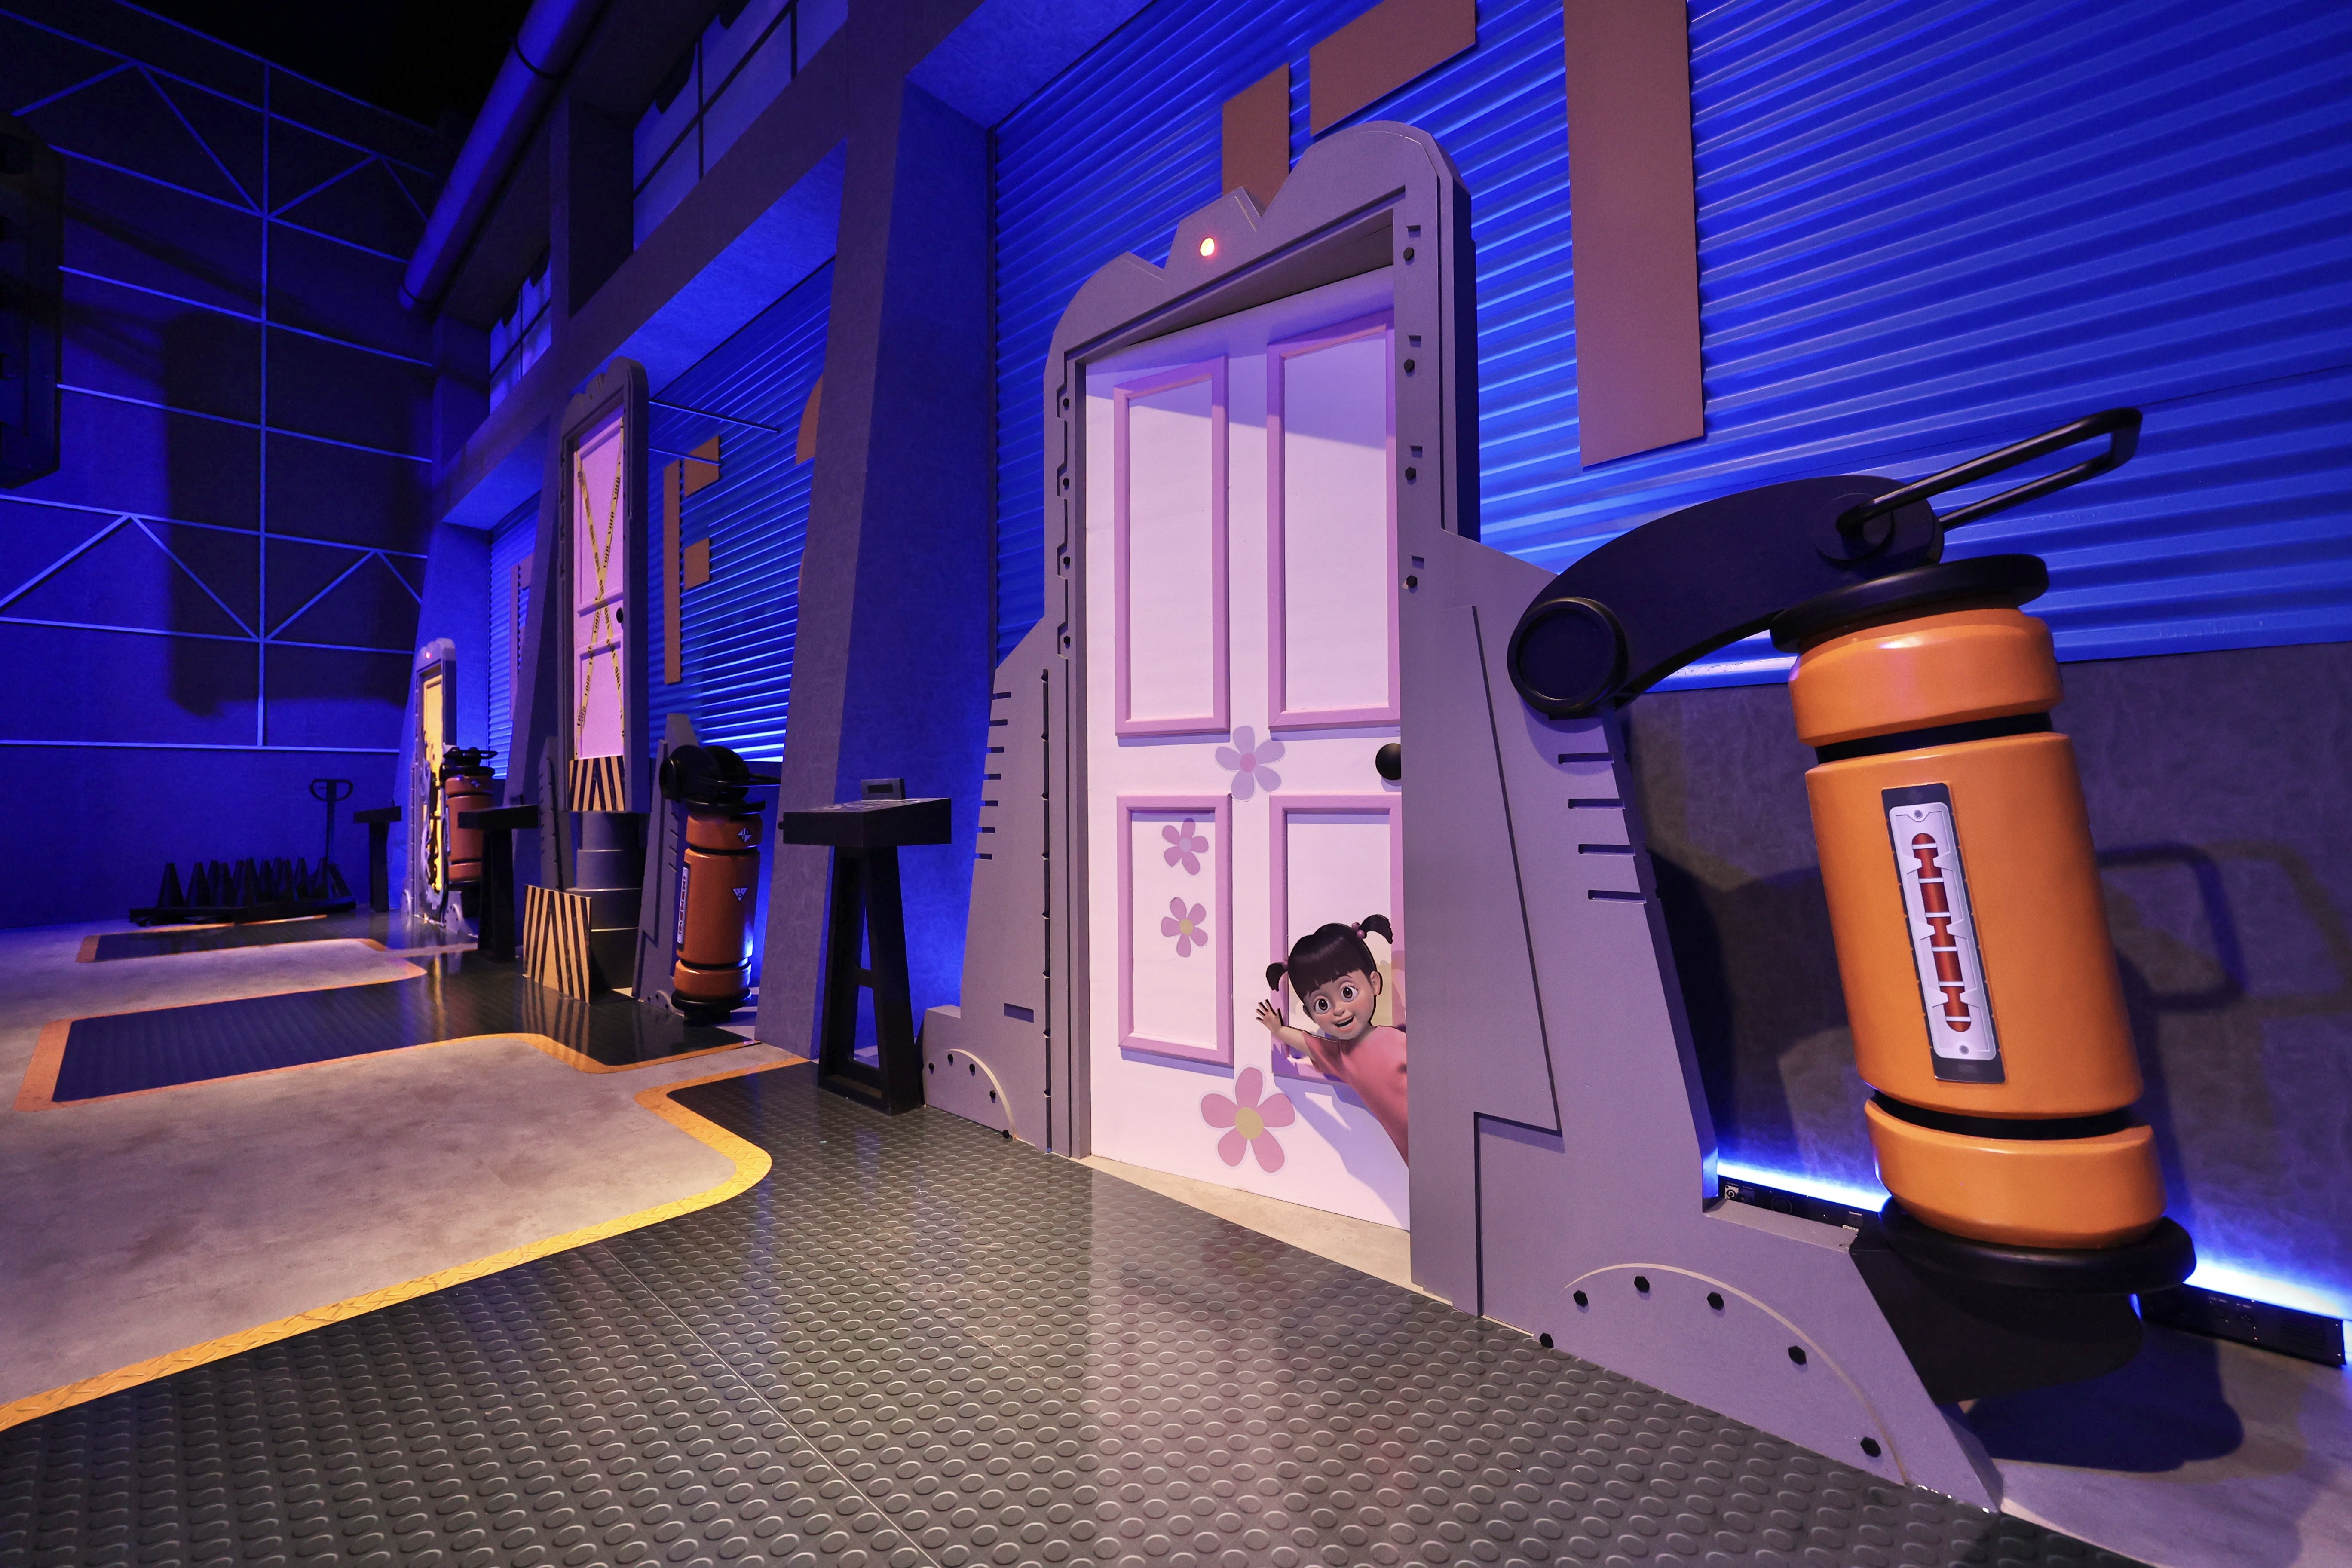 Mundo Pixar recria cenários de filmes icônicos do estúdio (Foto: Divulgação/The Walt Disney Company Brasil)